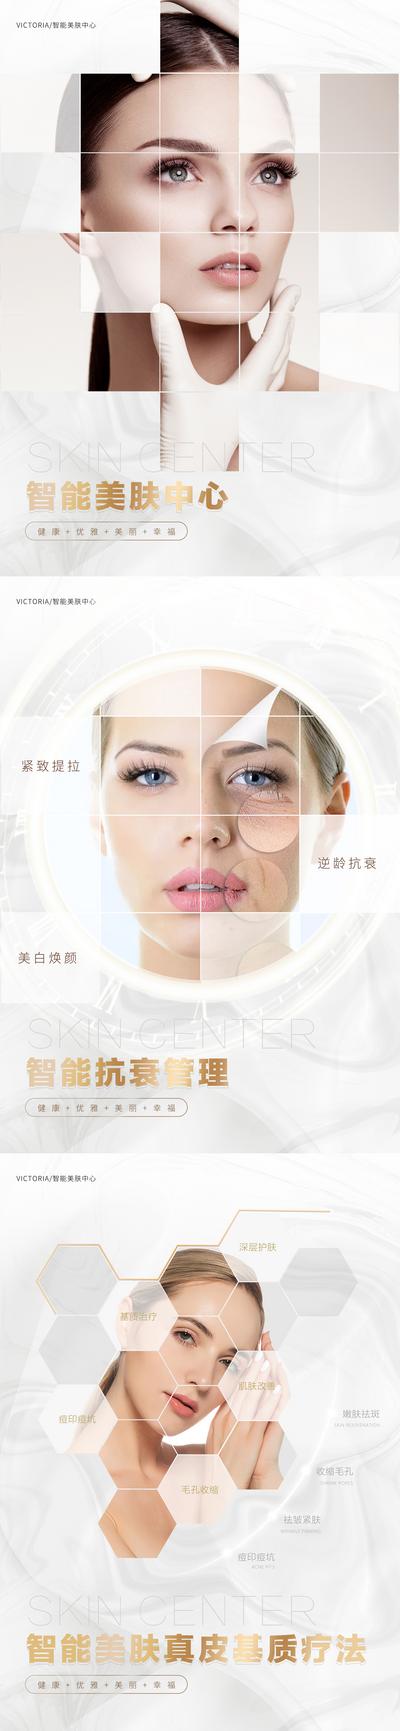 南门网 医美皮肤管理海报系列